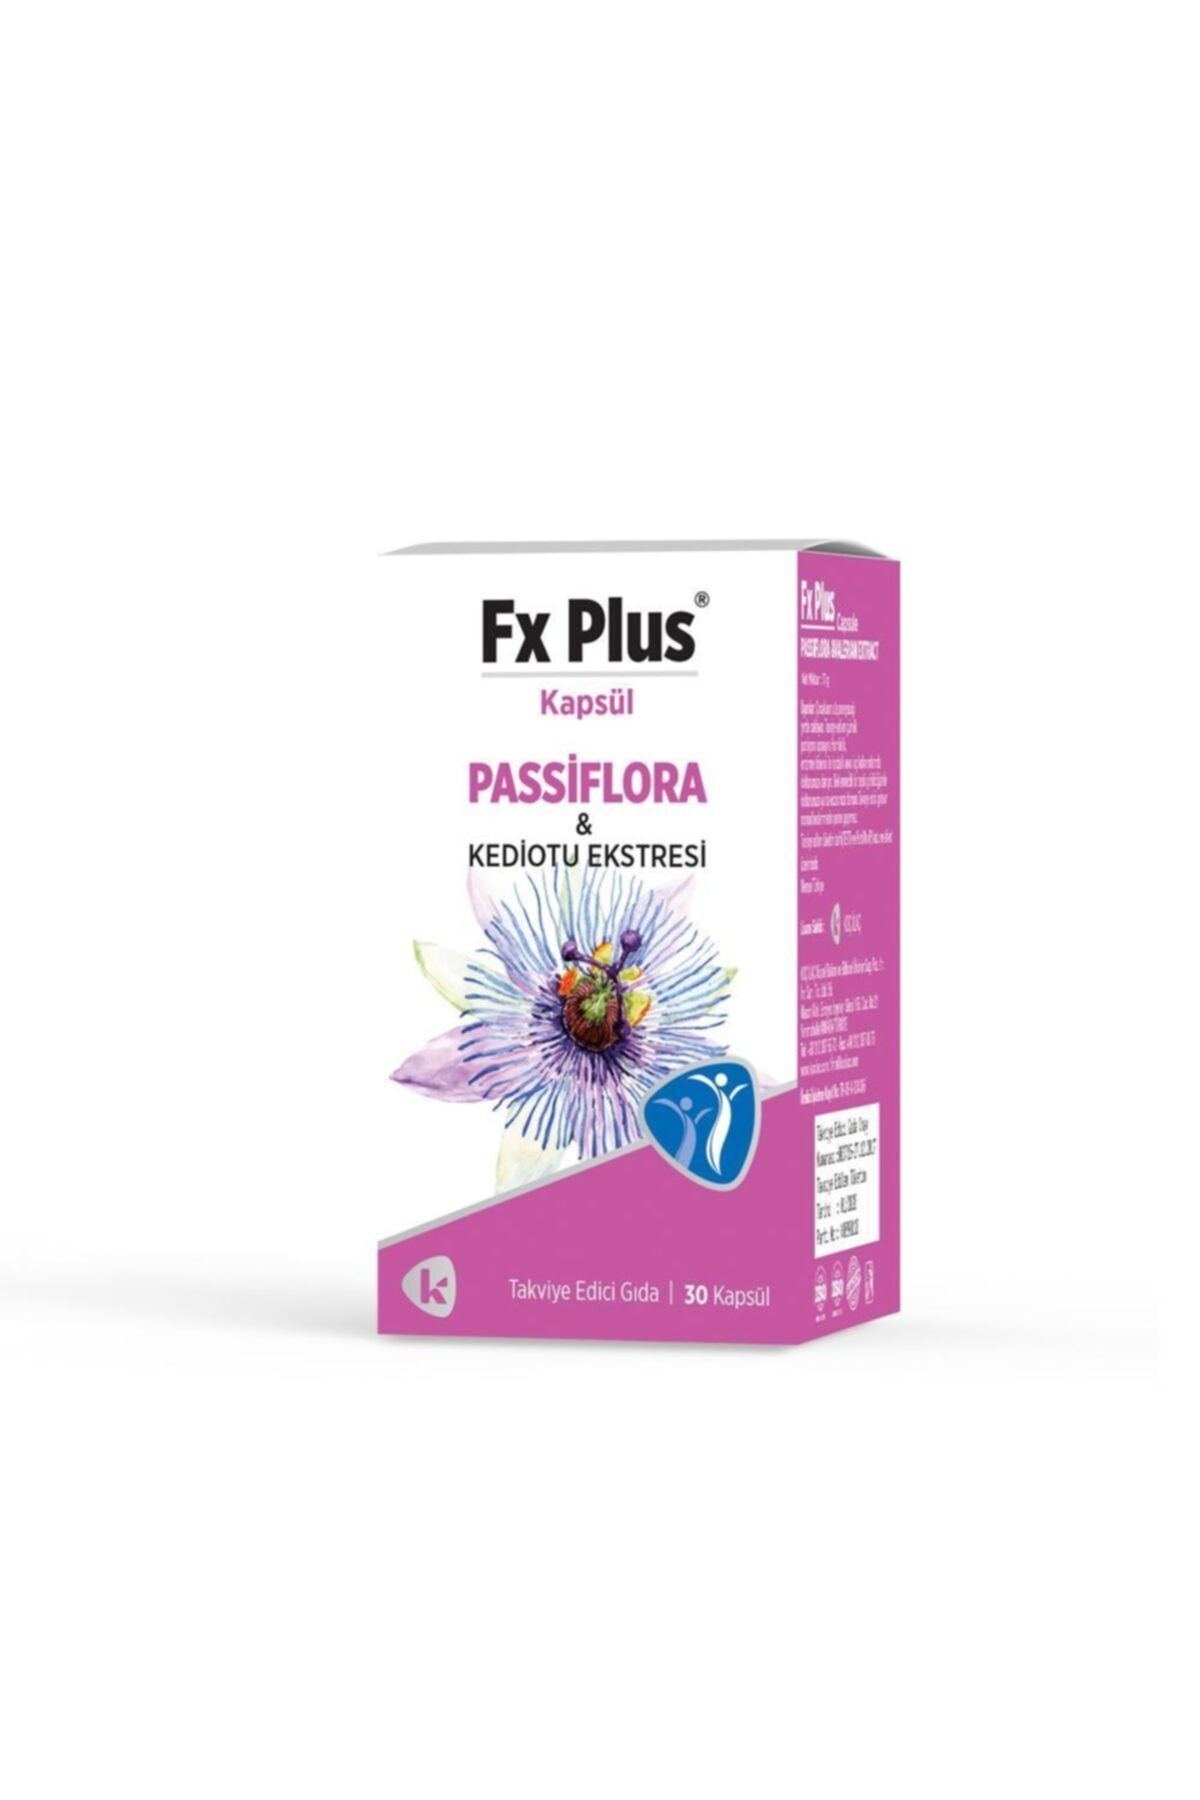 FX PLUS Passiflora Ve Kediotu Ekstresi 30 Kapsül